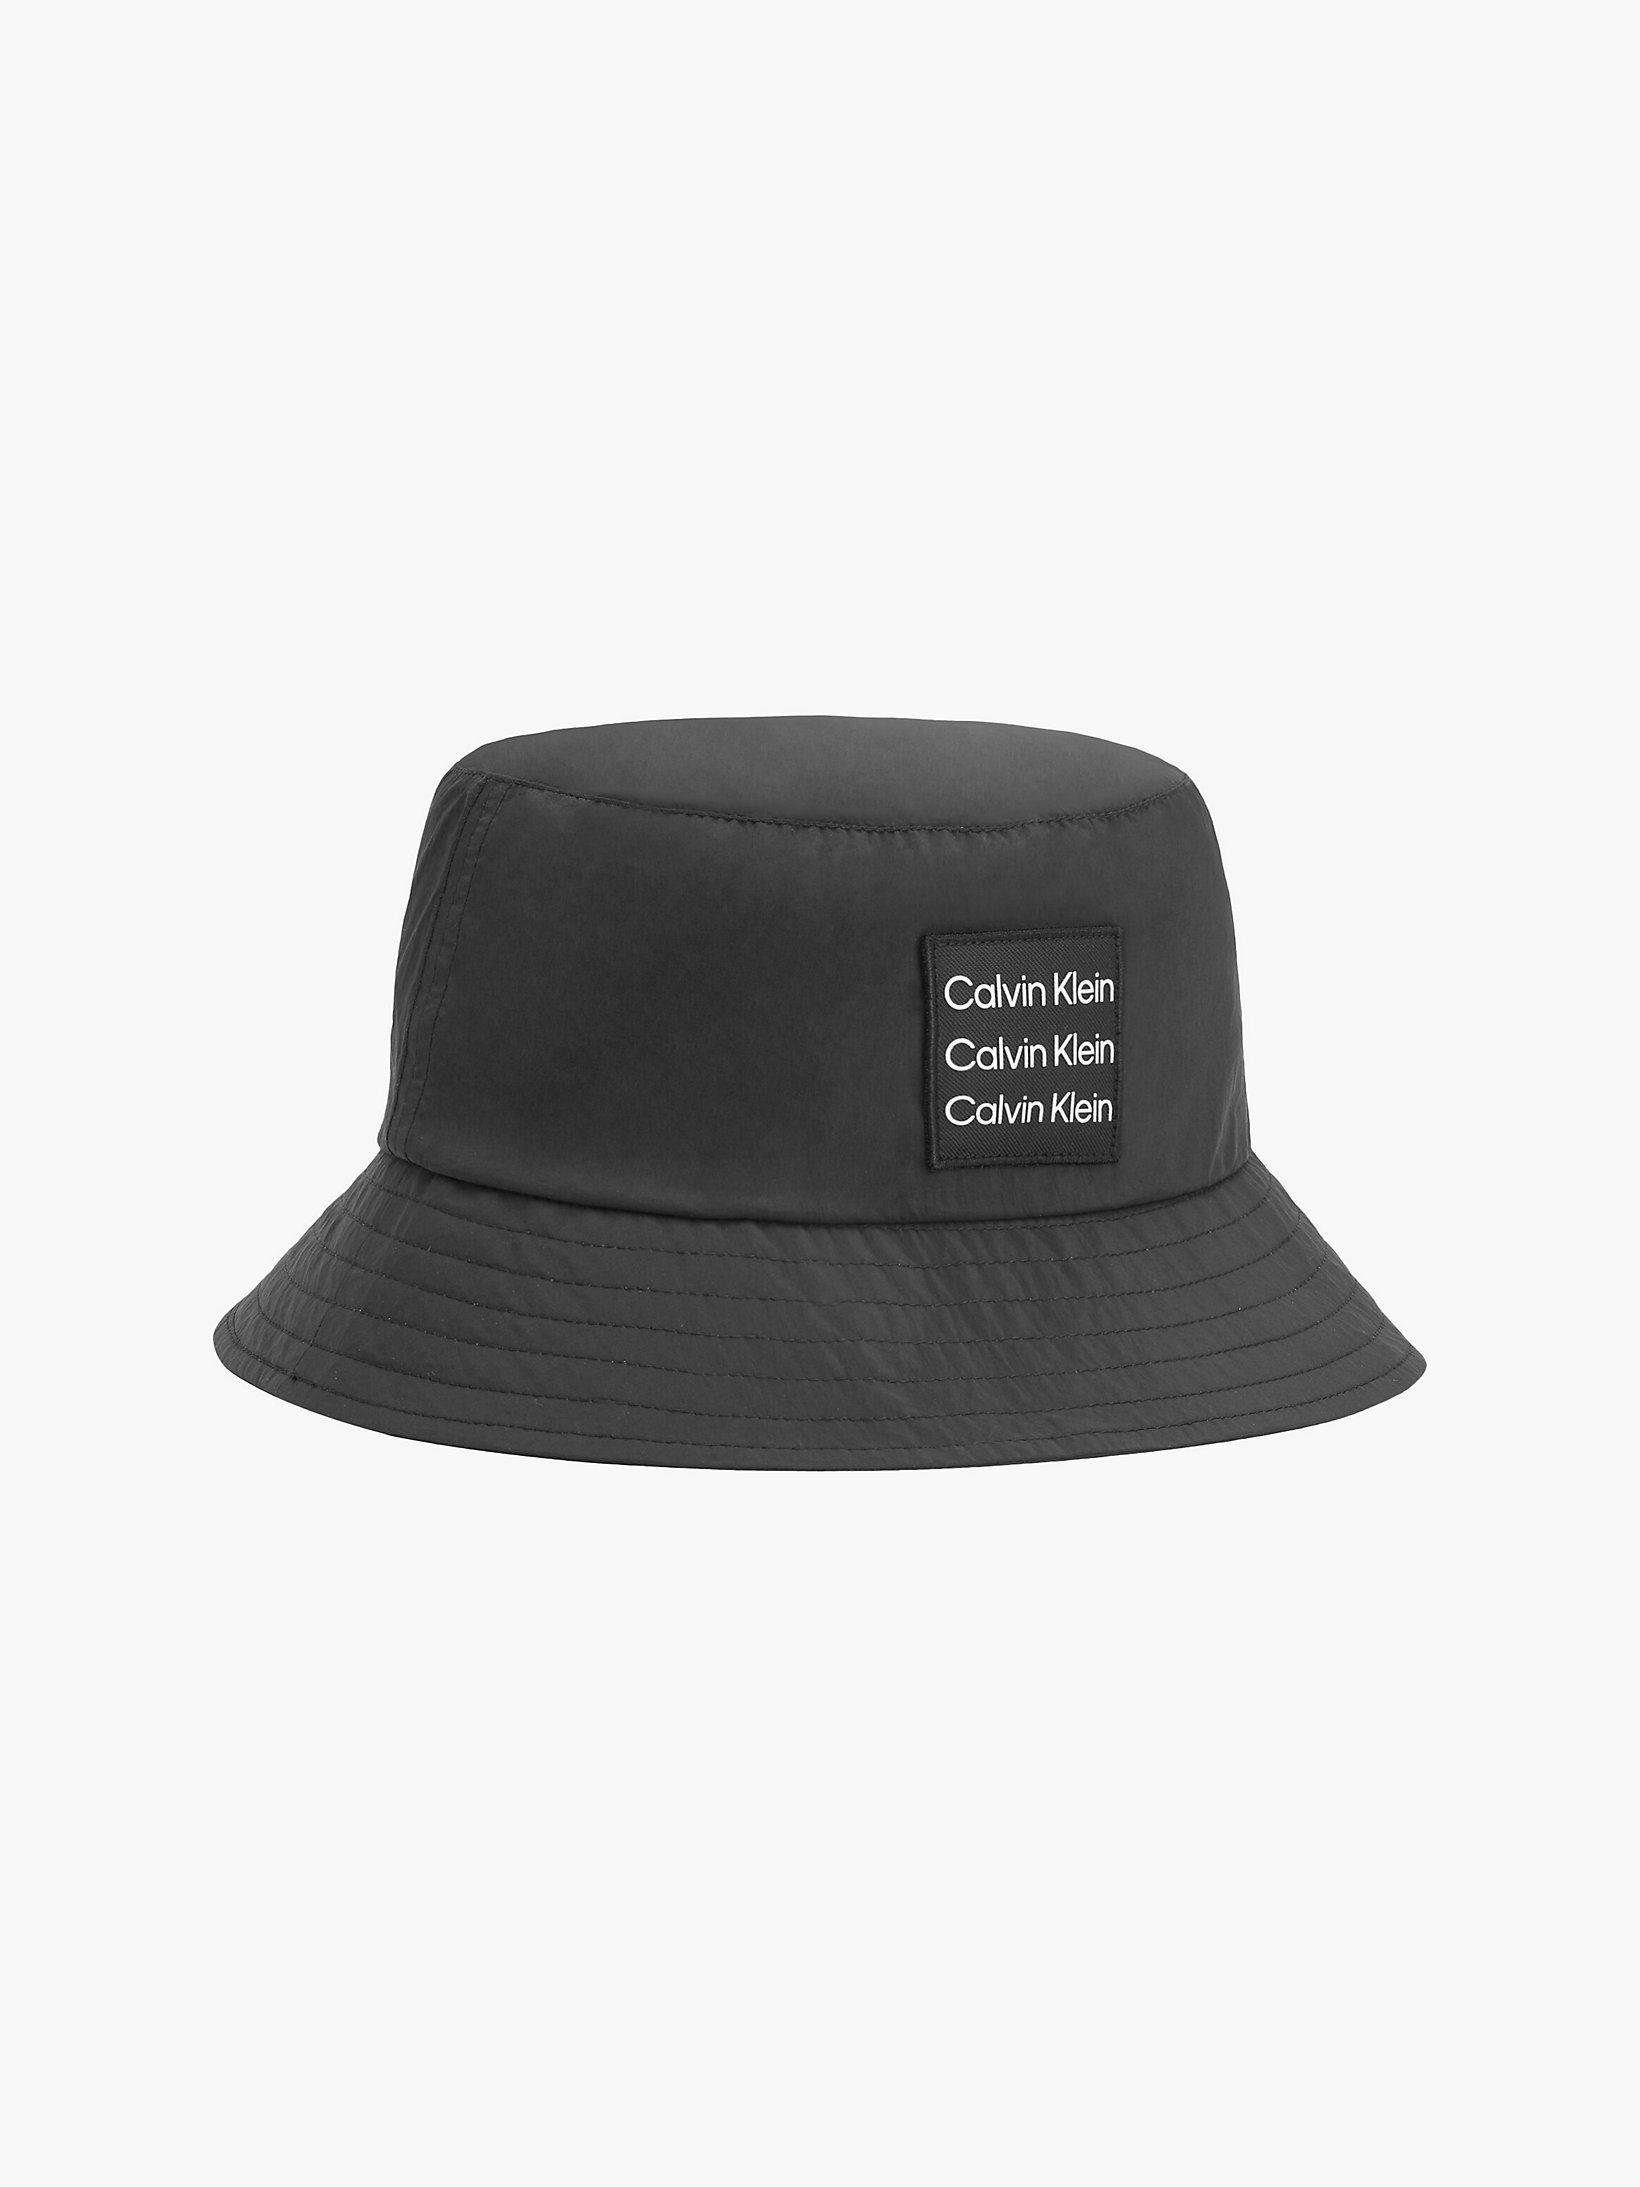 Pvh Black Bucket Hat - CK Nylon undefined unisex Calvin Klein